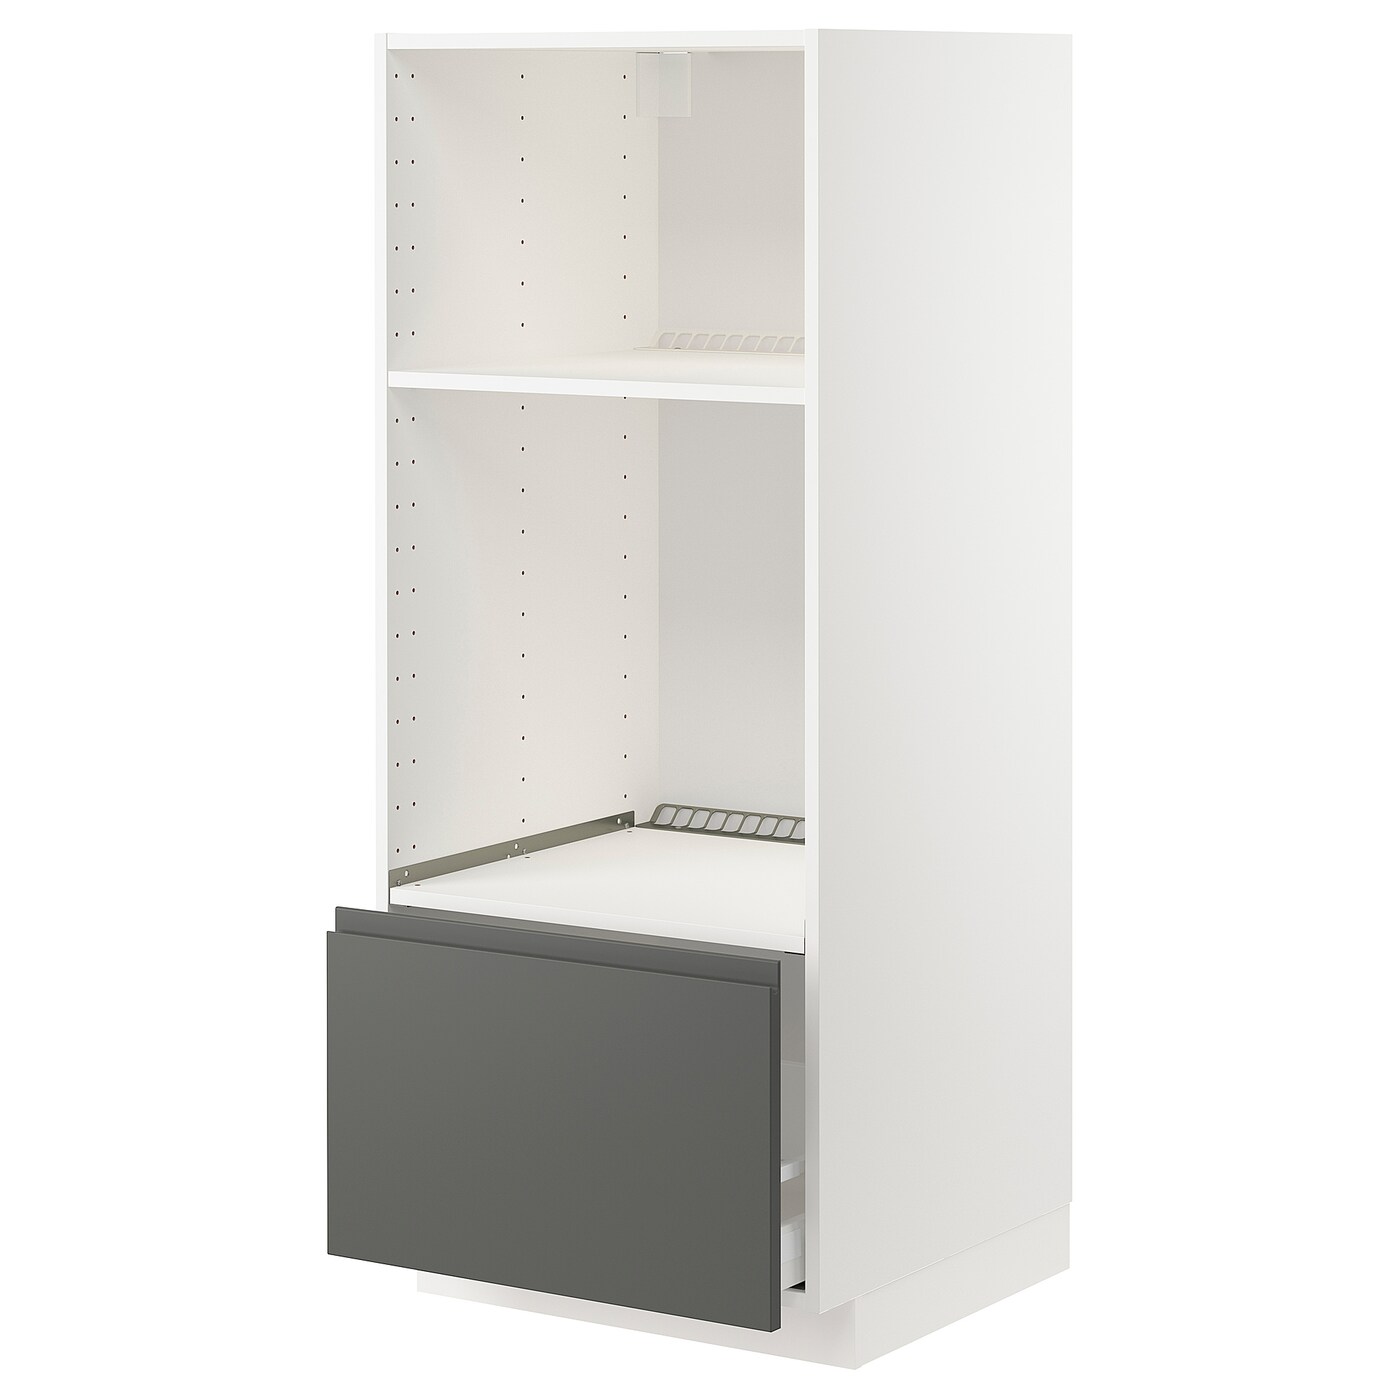 Напольный кухонный шкаф  - IKEA METOD MAXIMERA, 148x62x60см, белый/темно-серый, МЕТОД МАКСИМЕРА ИКЕА